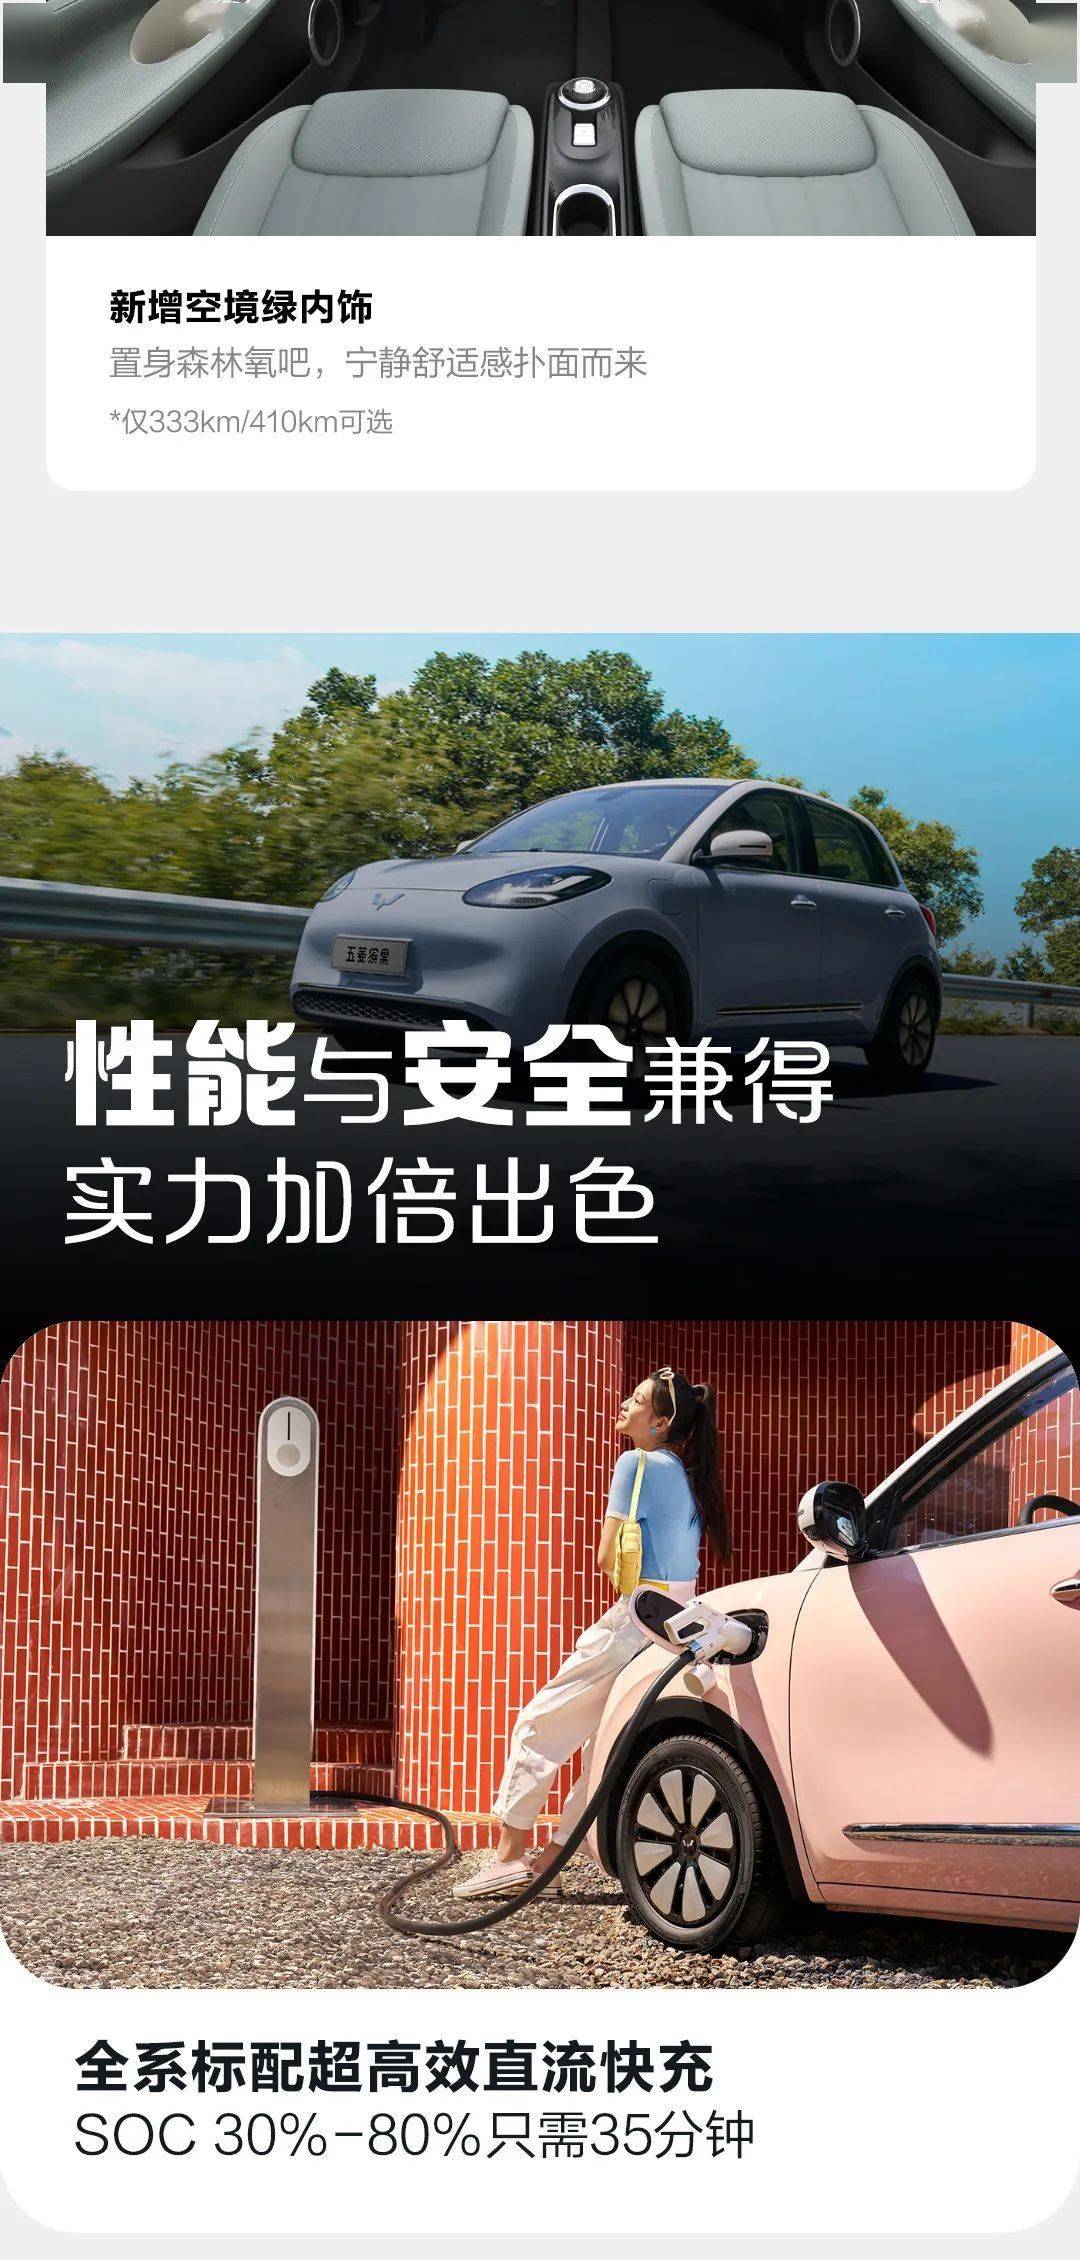 2024澳彩管家婆资料传真>>反对拉踩式营销 树立正确的竞争方式 中国汽车业该作出抉择了